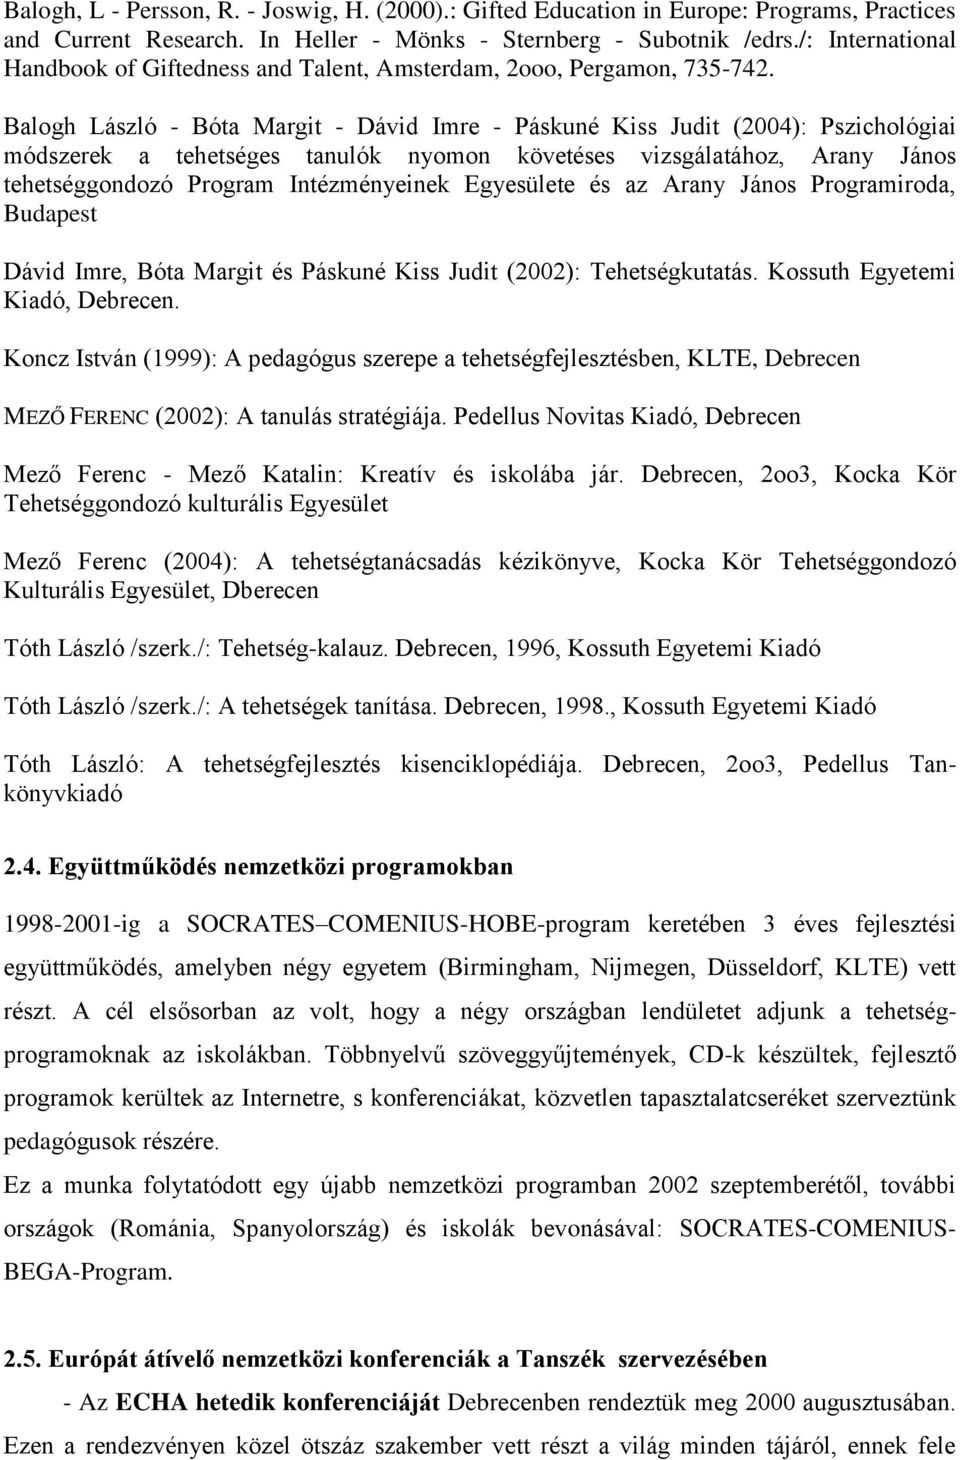 Balogh László - Bóta Margit - Dávid Imre - Páskuné Kiss Judit (2004): Pszichológiai módszerek a tehetséges tanulók nyomon követéses vizsgálatához, Arany János tehetséggondozó Program Intézményeinek